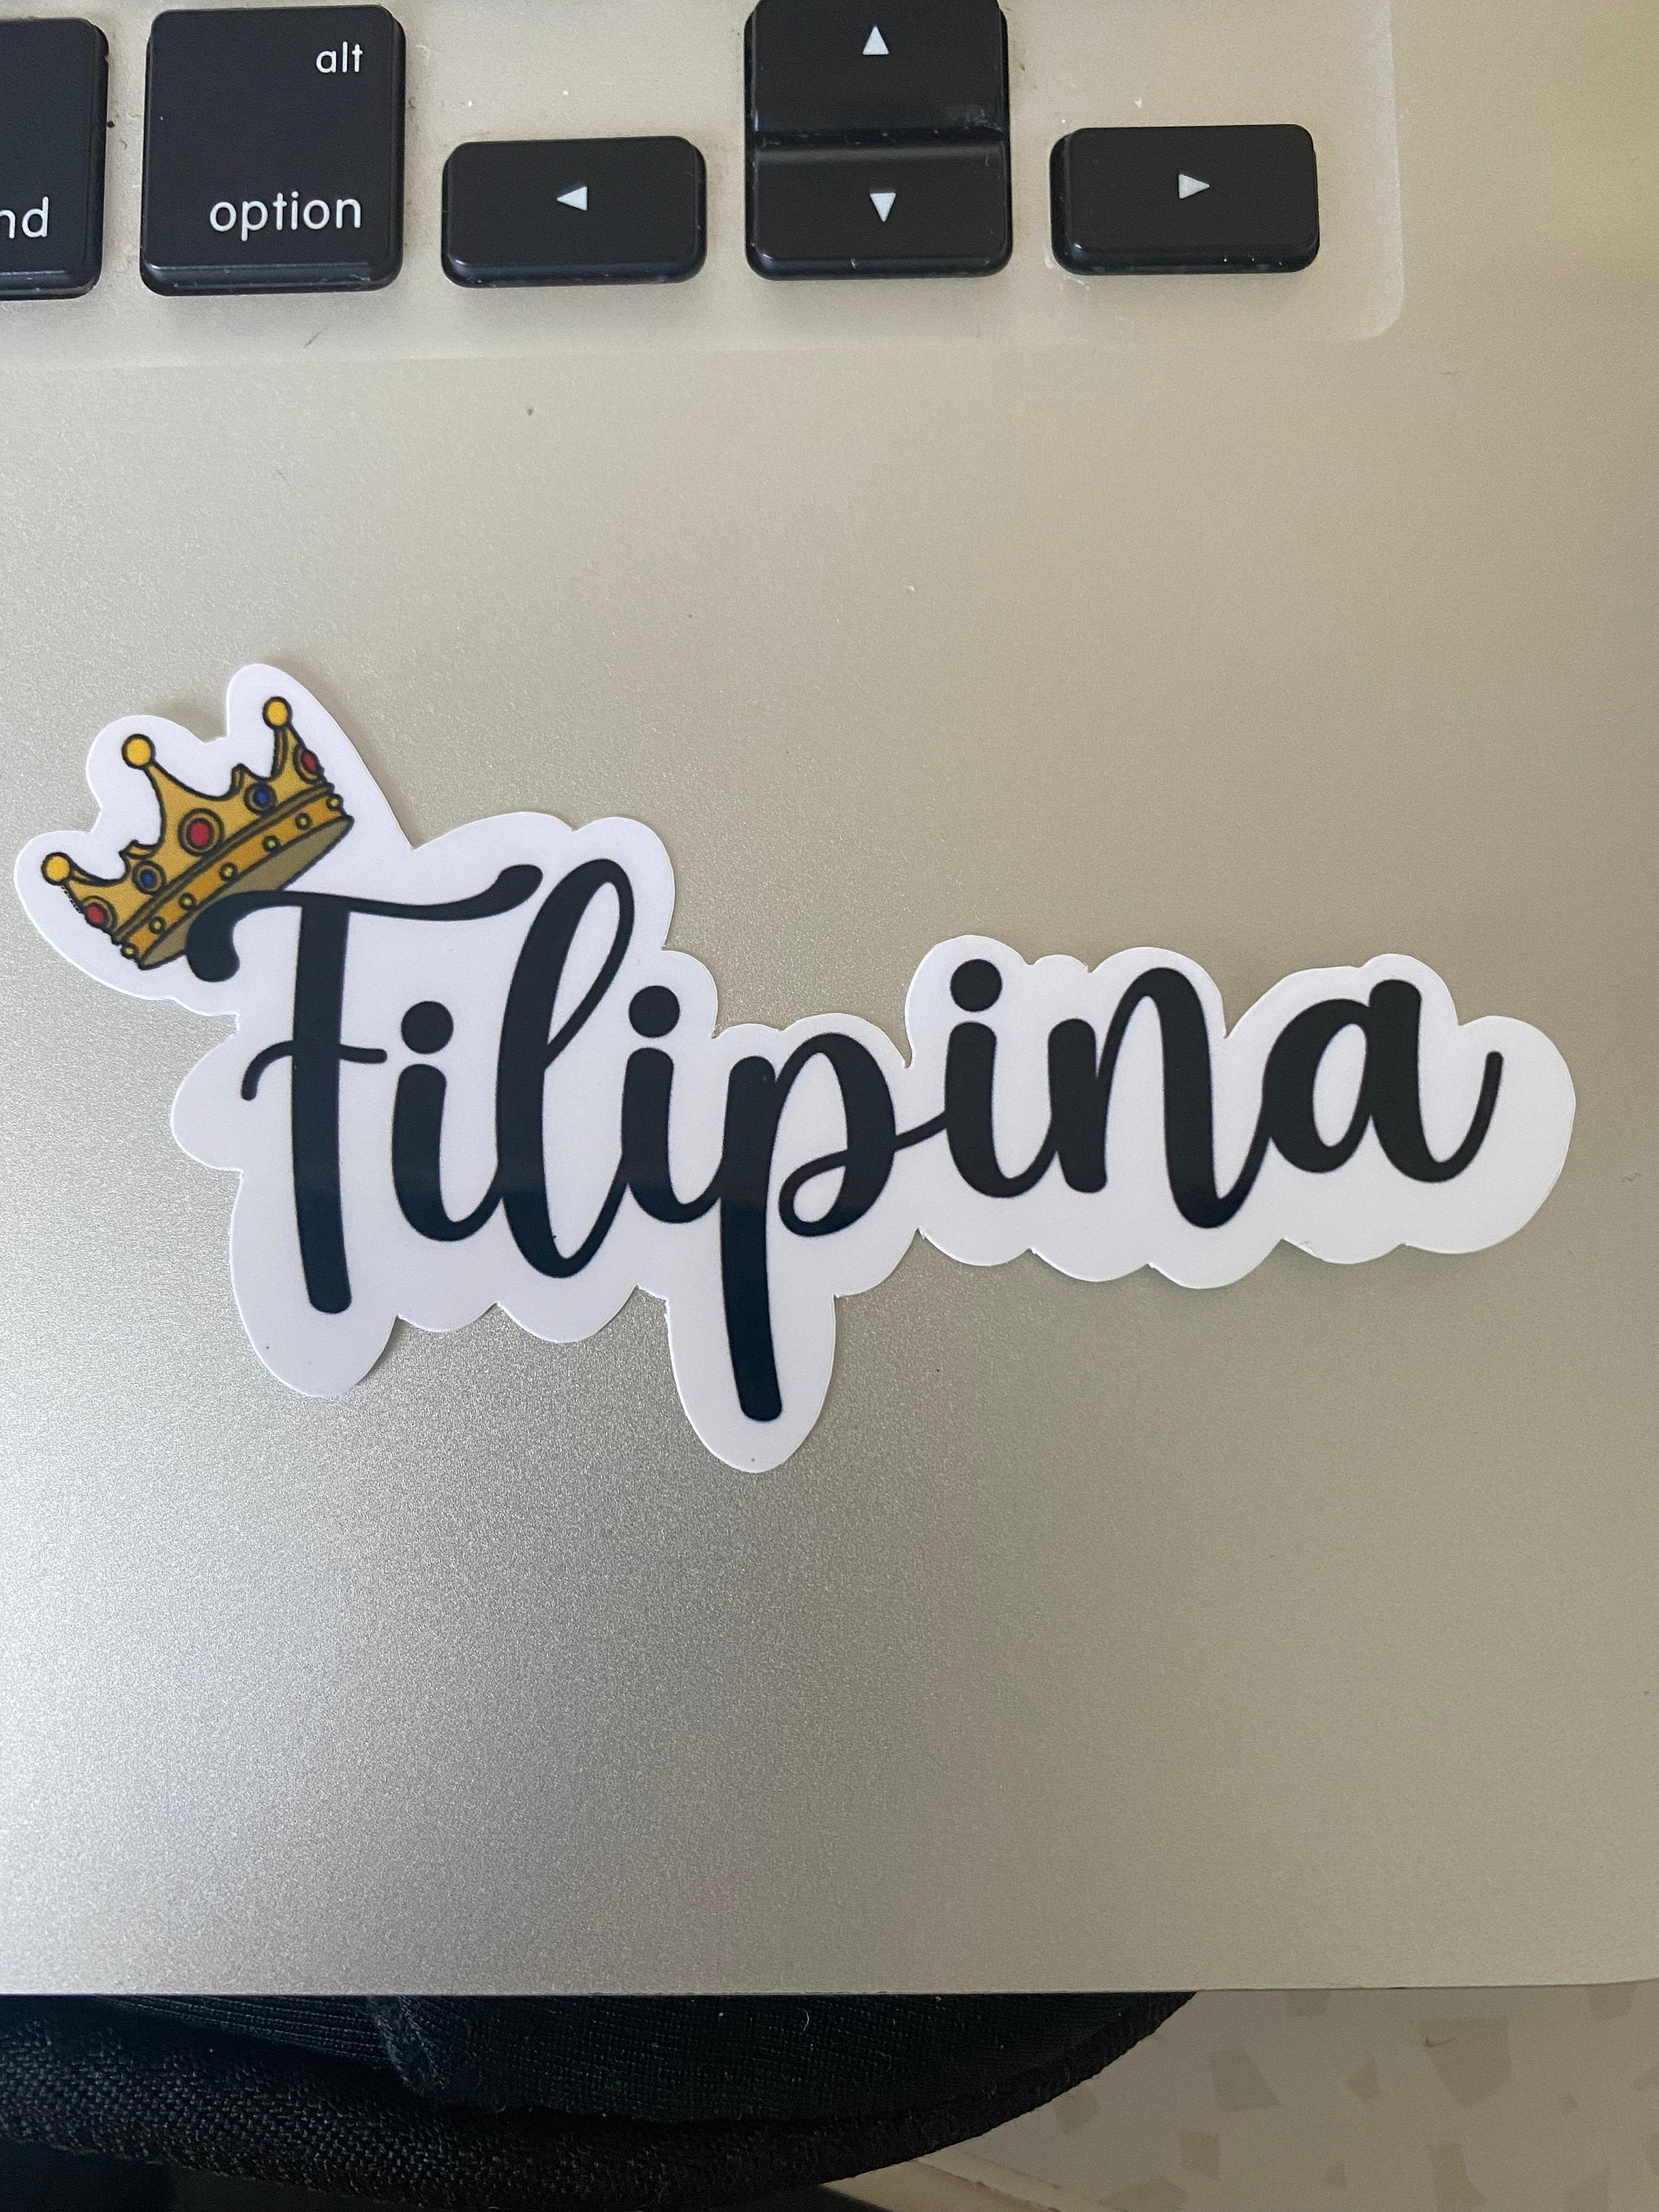 Mie Makes Filipina Sticker, Filipina Queen Sticker, Filipino Queen, Filipino Crown Sticker, Philippines, Laptop Sticker, Waterbottle Sticker, Decal